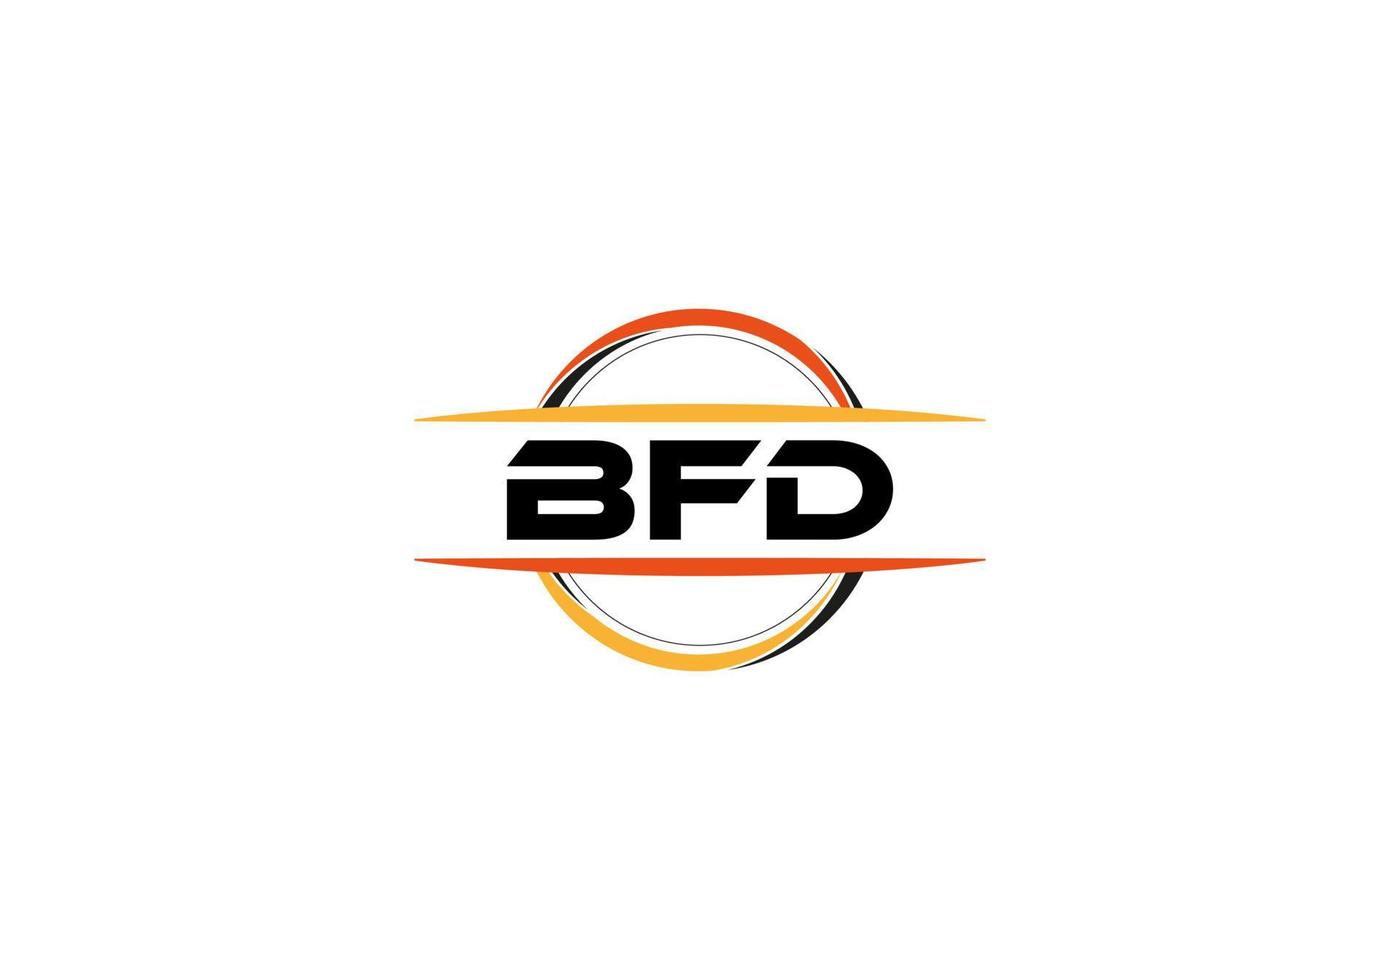 bfd lettera reali ellisse forma logo. bfd spazzola arte logo. bfd logo per un' azienda, attività commerciale, e commerciale uso. vettore